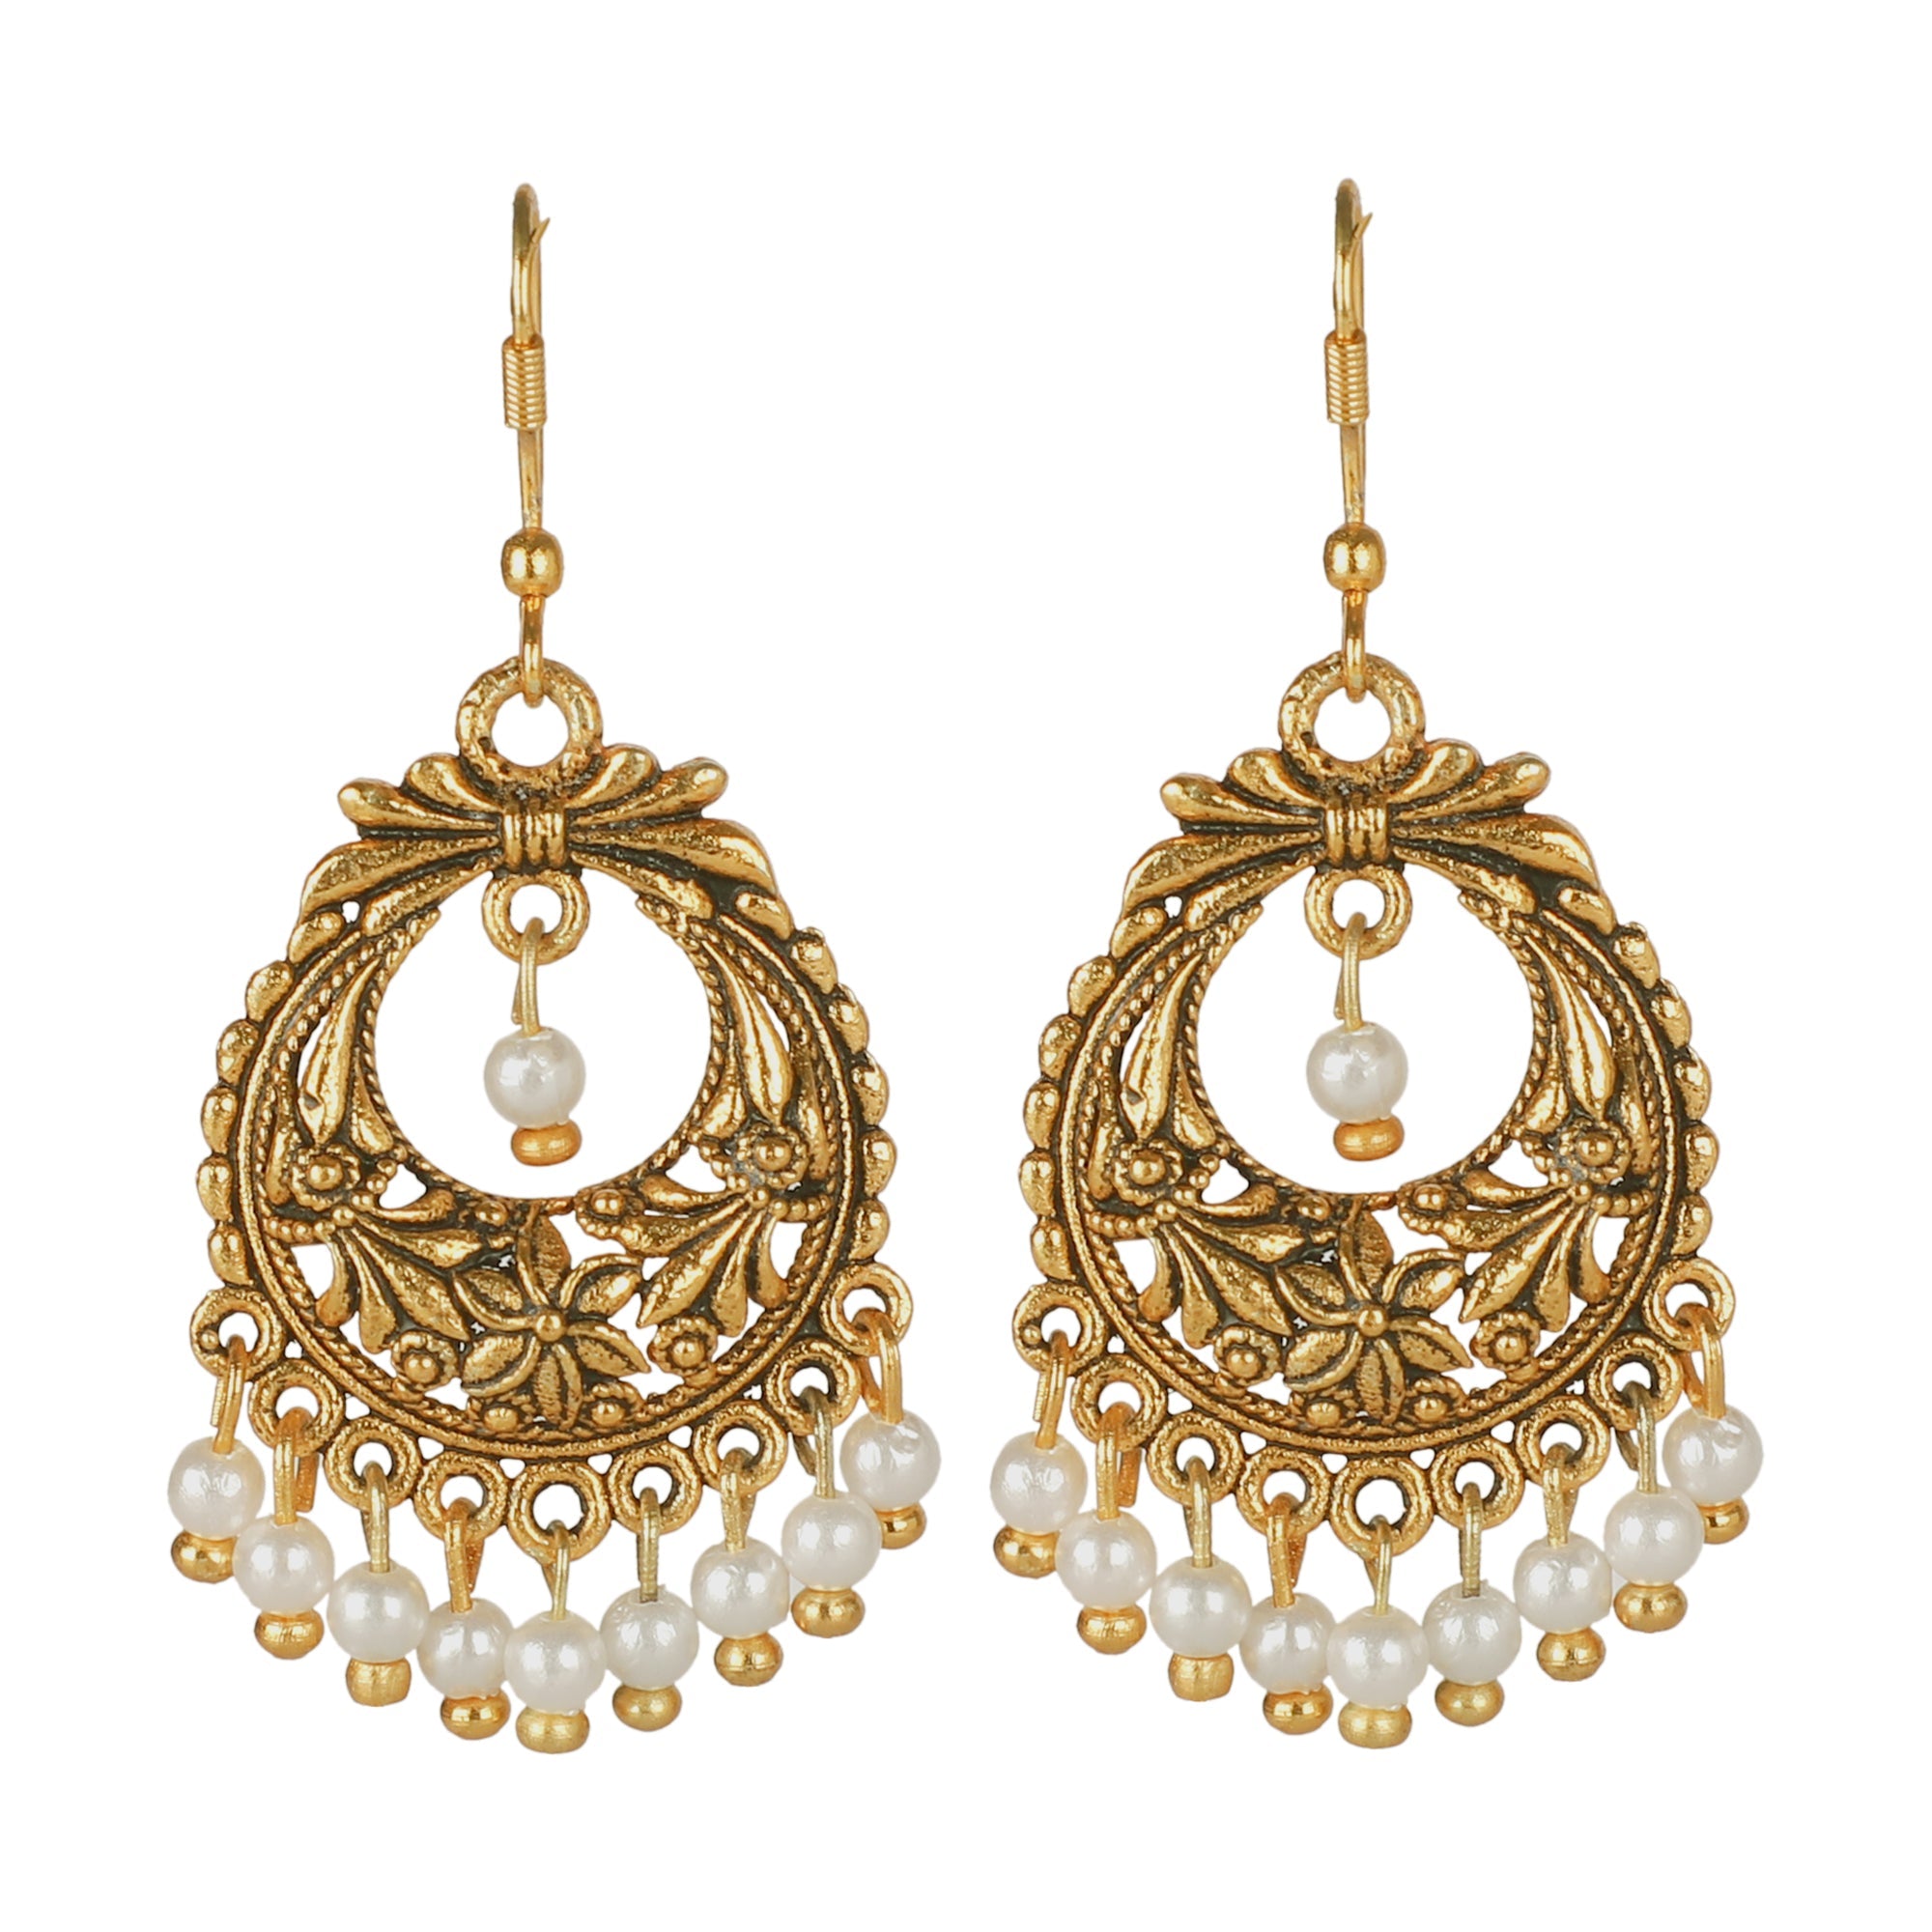 J11872 Mini Size Jhumka Screwback Lock Plain Gold Casting Design Jewellery  Daily Wear | JewelSmart.in